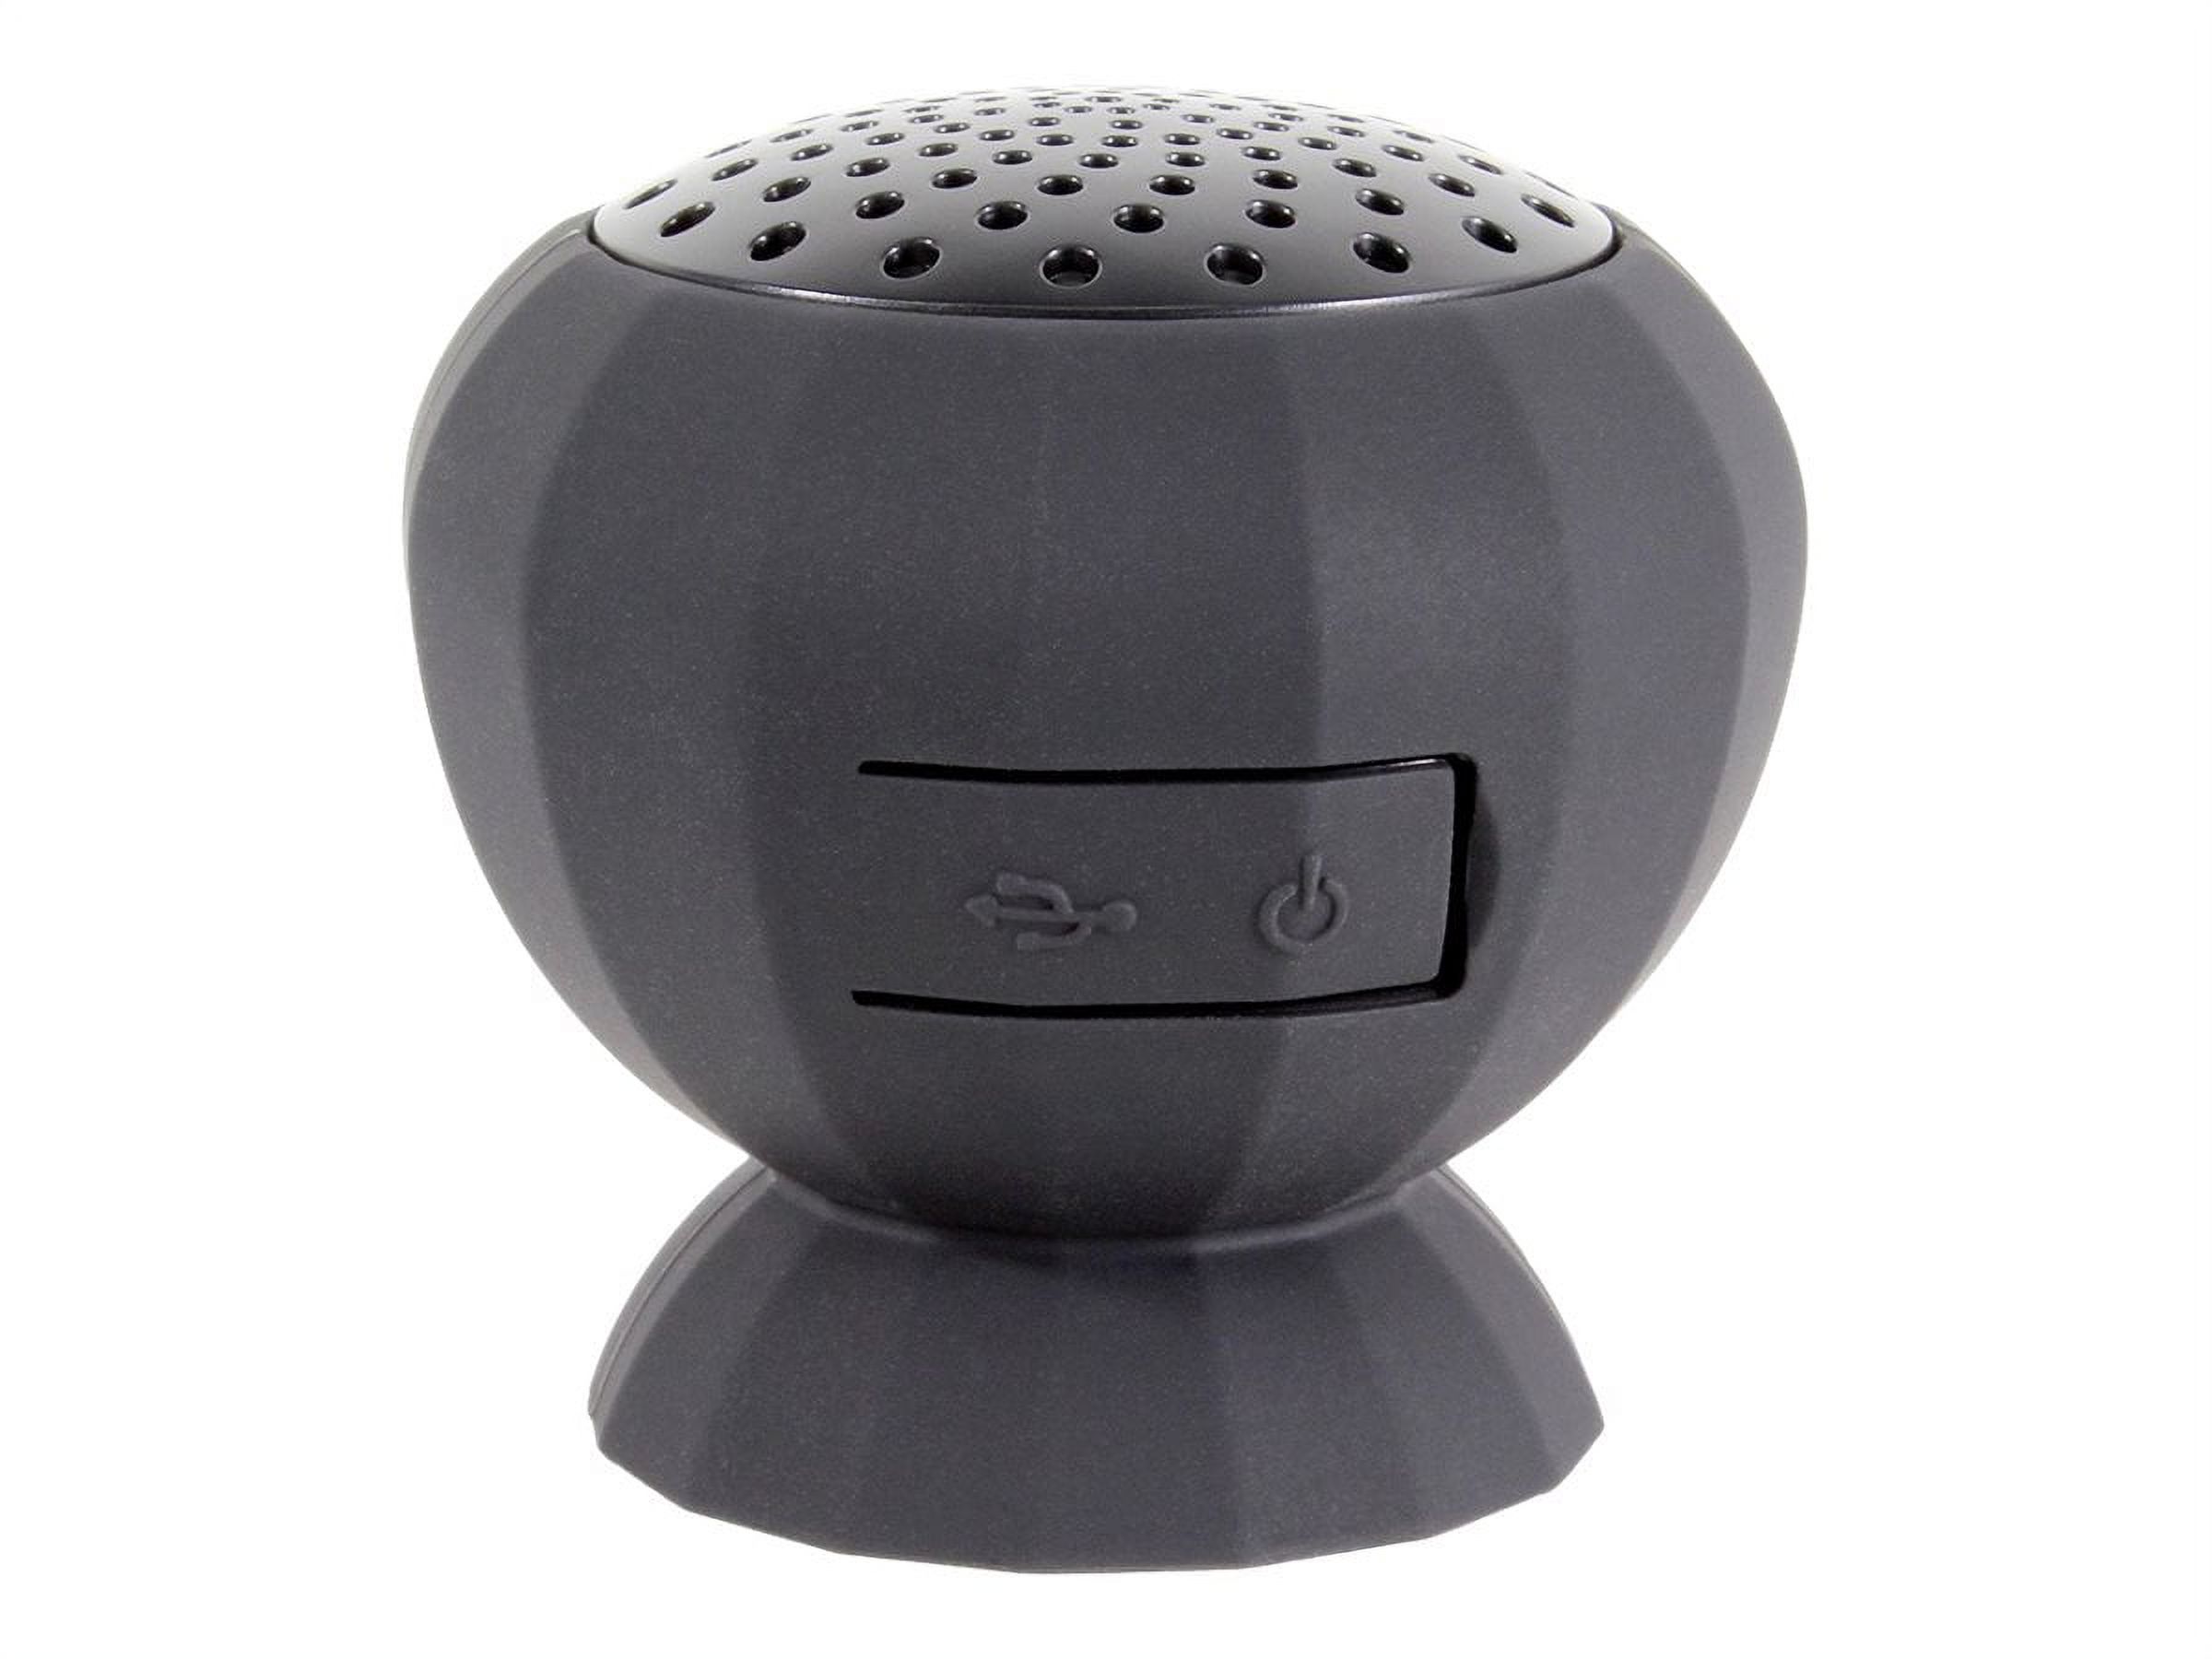 Digital Treasures Lyrix JIVE Portable Bluetooth Speaker, Black - image 2 of 2